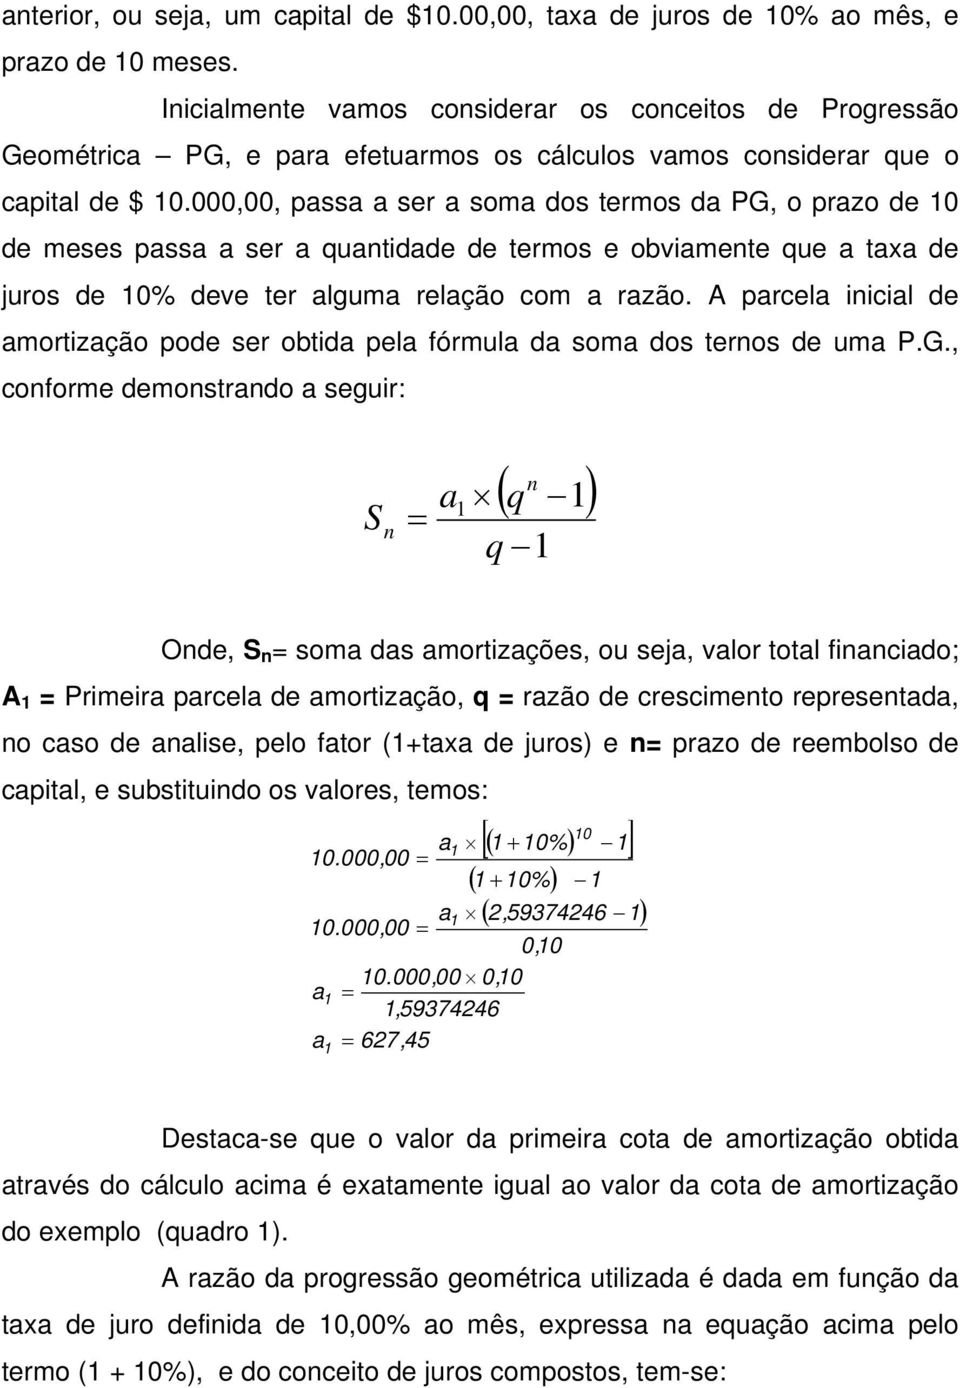 razão A parcela iicial de amortização pode ser obtida pela fórmula da soma dos teros de uma PG, coforme demostrado a seguir: S = ( q ) a q Ode, S = soma das amortizações, ou seja, valor total